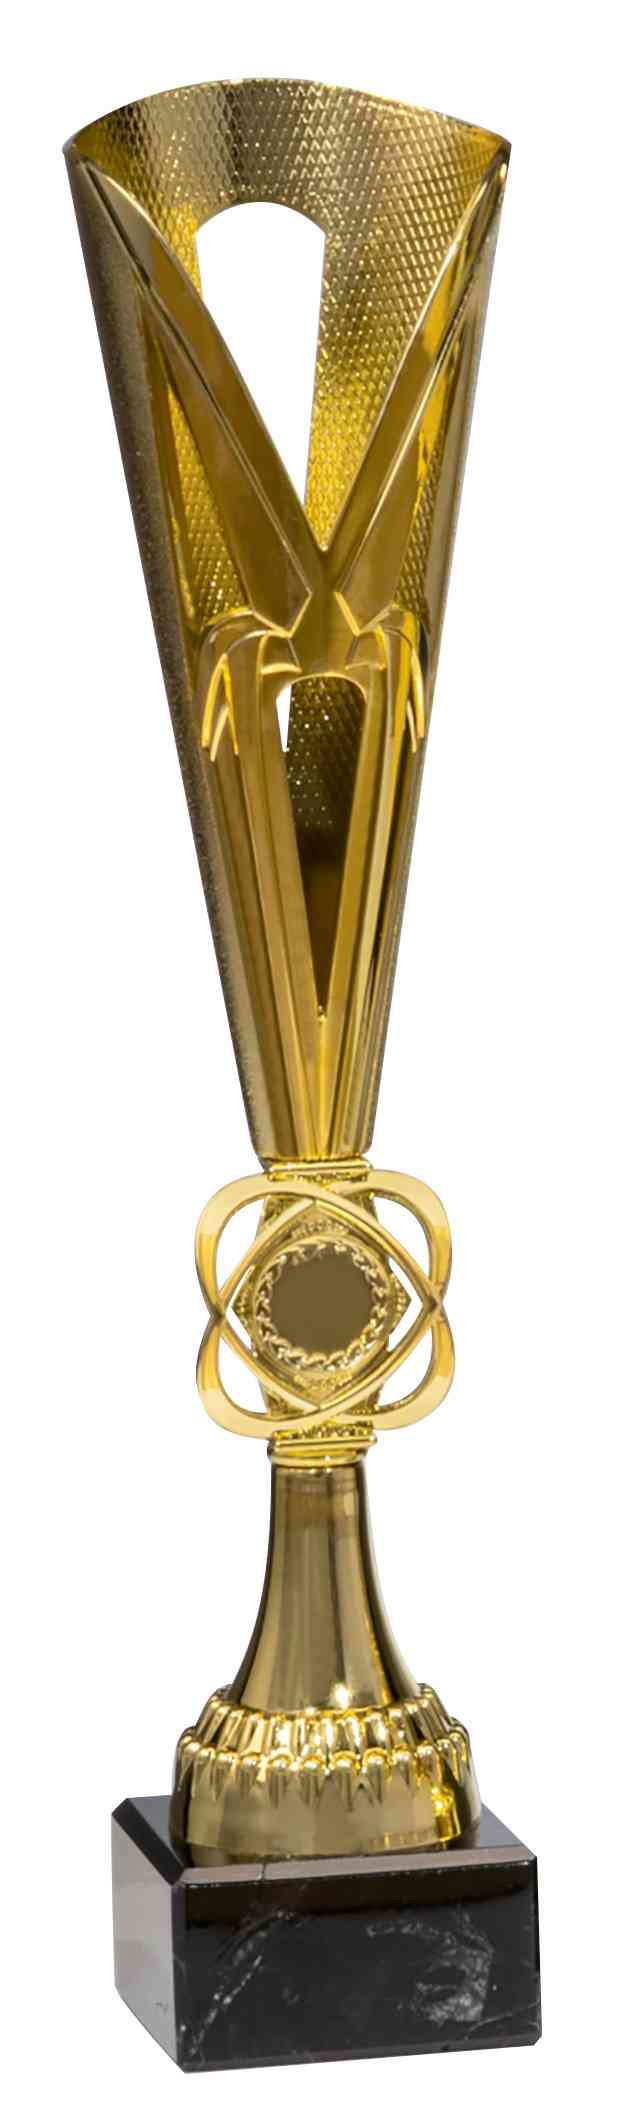 Goldpokal aus der Pokale Chelle 3-er Pokalserie 347 mm – 367 mm PK756480-3-E25 mit einem Y-förmigen Oberteil und einem Lorbeerkranz-Emblem auf schwarzem Sockel.